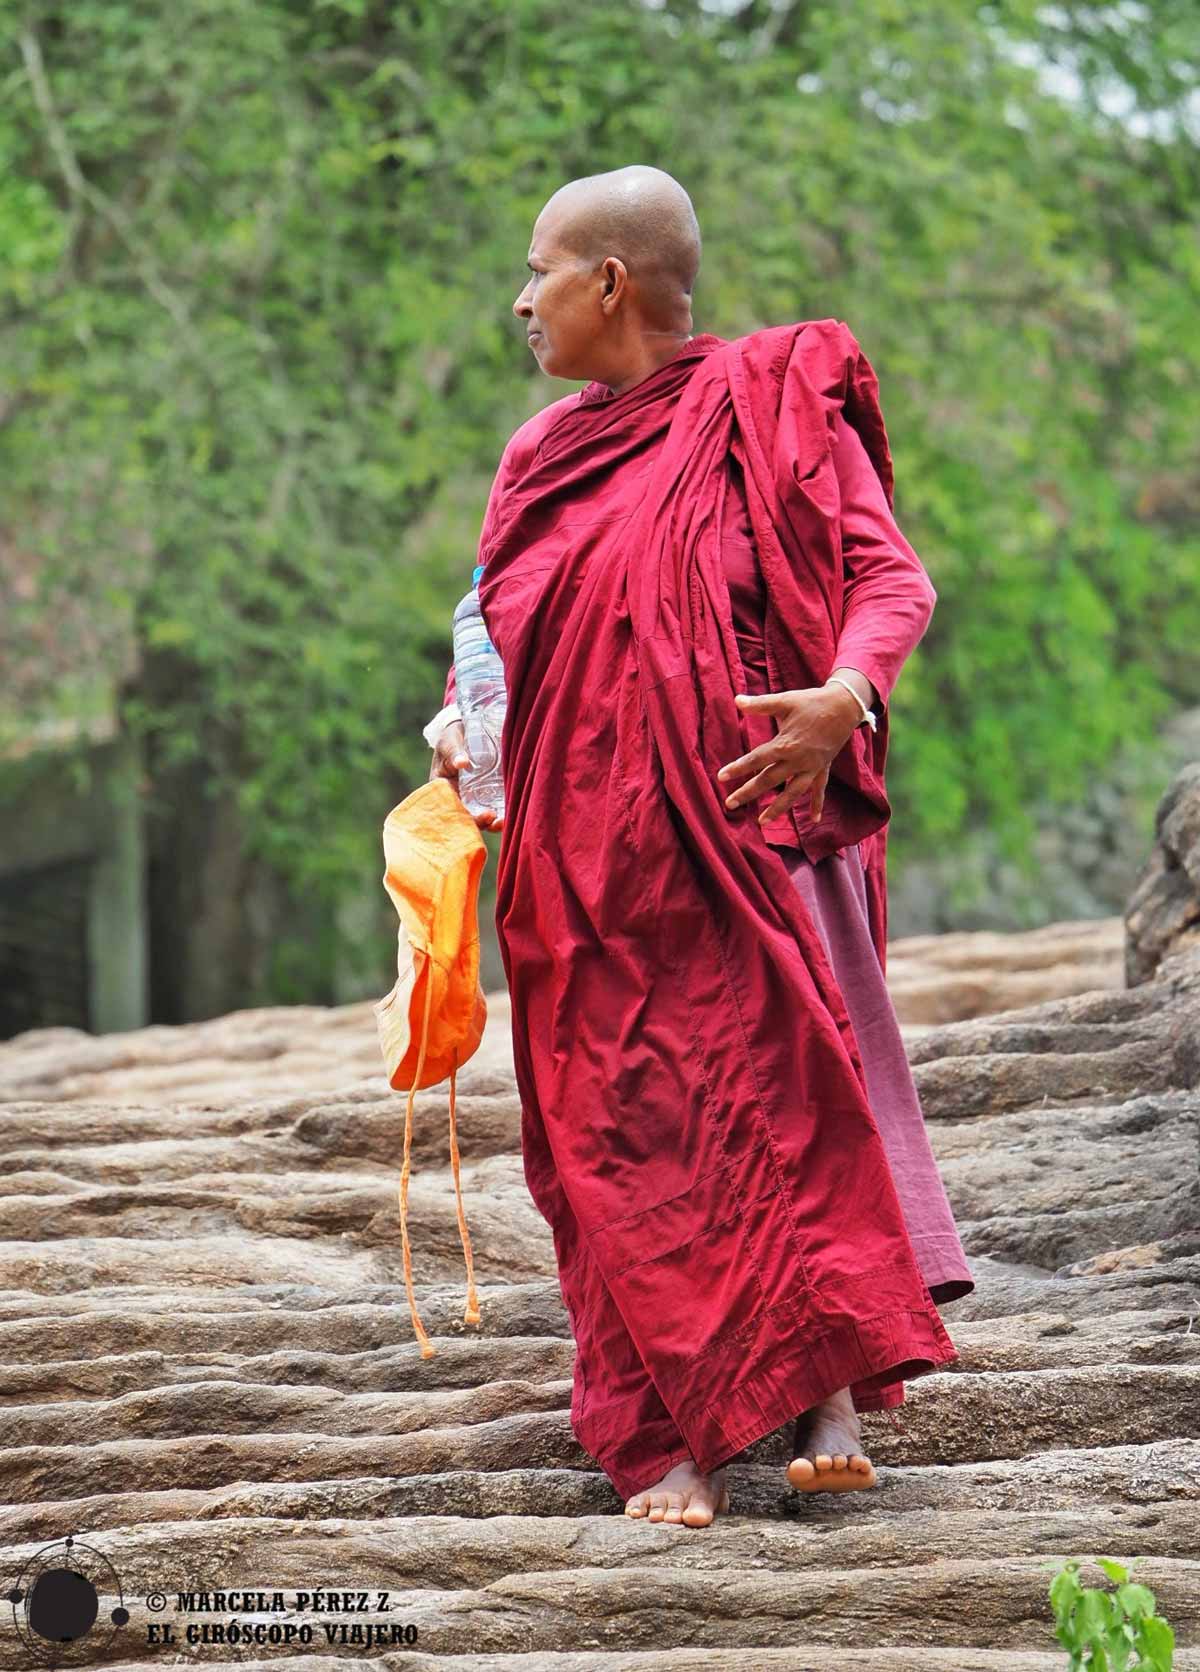 Mihintale es un lugar de peregrinaje budista muy importante en Sri Lanka